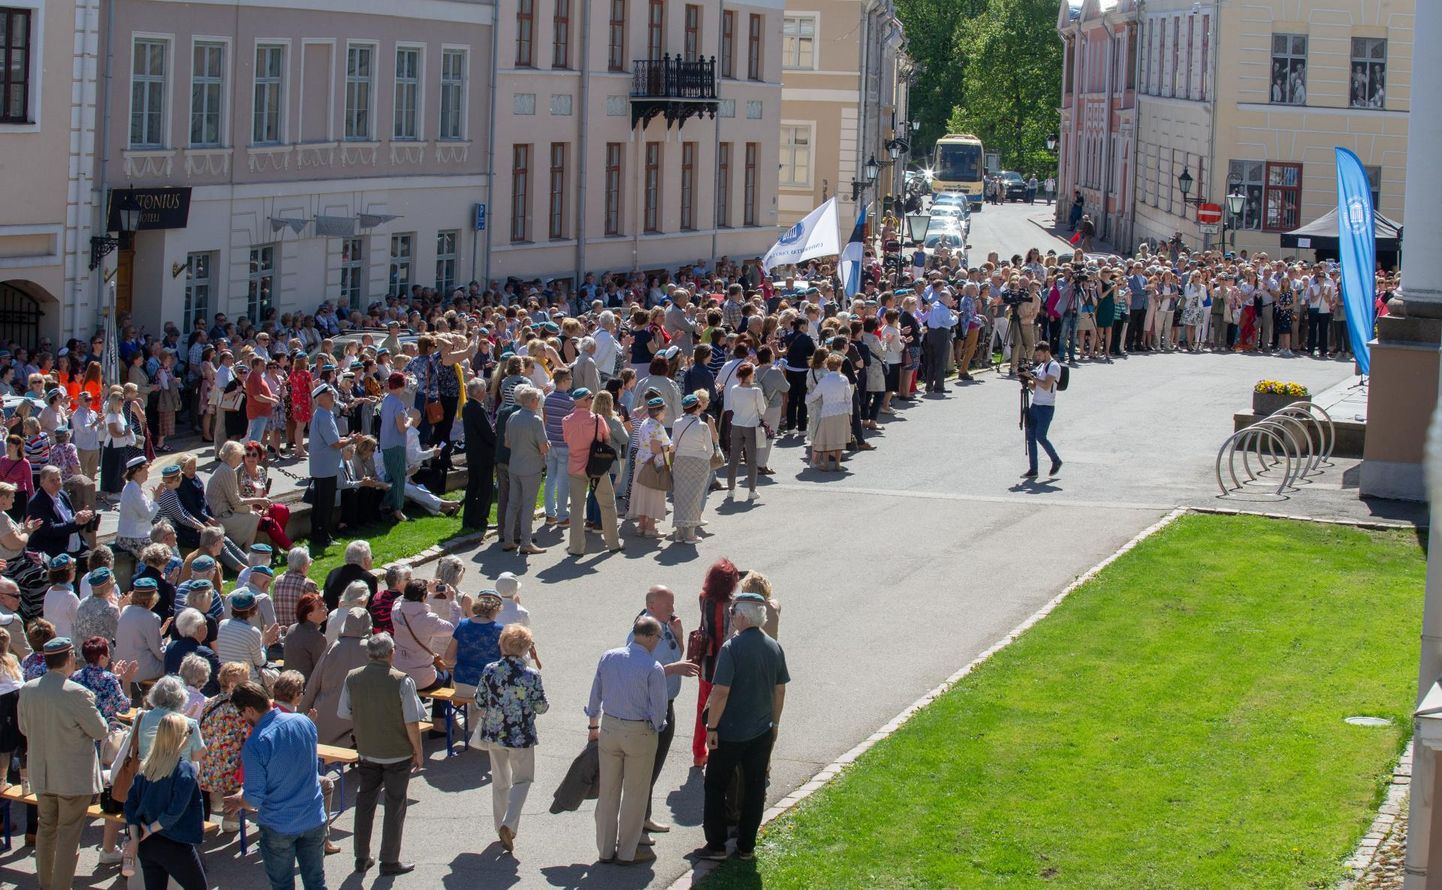 Vilistlaste kokkutuleku avamiseks kogunes rahvas ülikooli peahoone ette. Tartusse tulnuid oli sel päeval ühtekokku tublisti üle 2000.